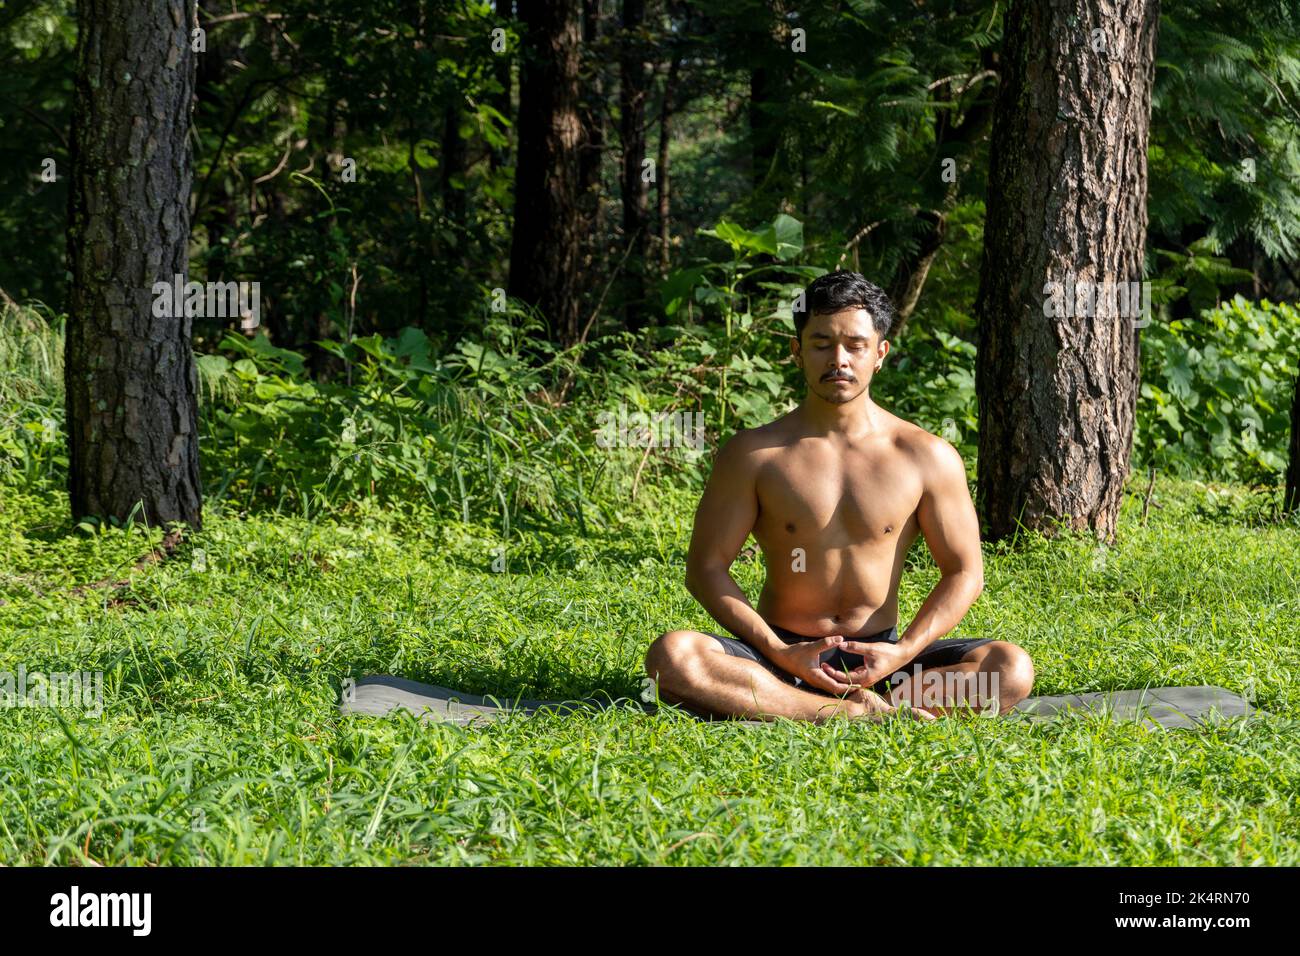 hispanique et homme latin, méditant au milieu d'une forêt, recevant des rayons du soleil, peau brune, mexique Banque D'Images